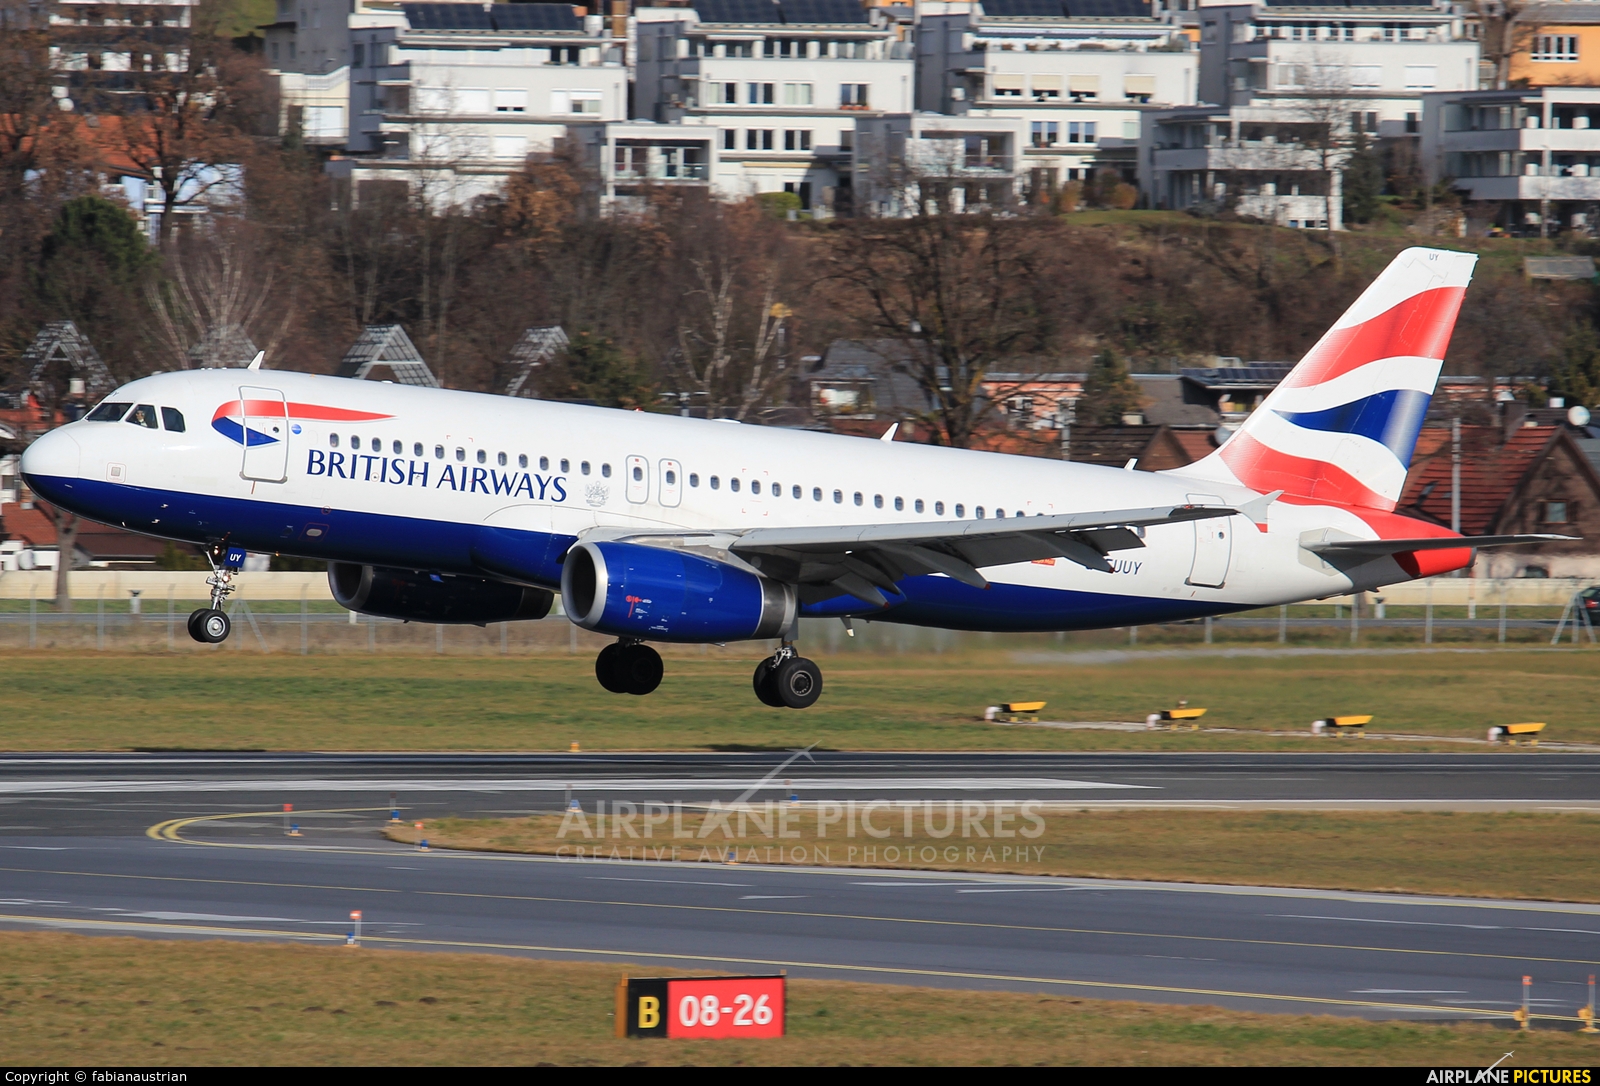 British Airways G-EUUY aircraft at Innsbruck